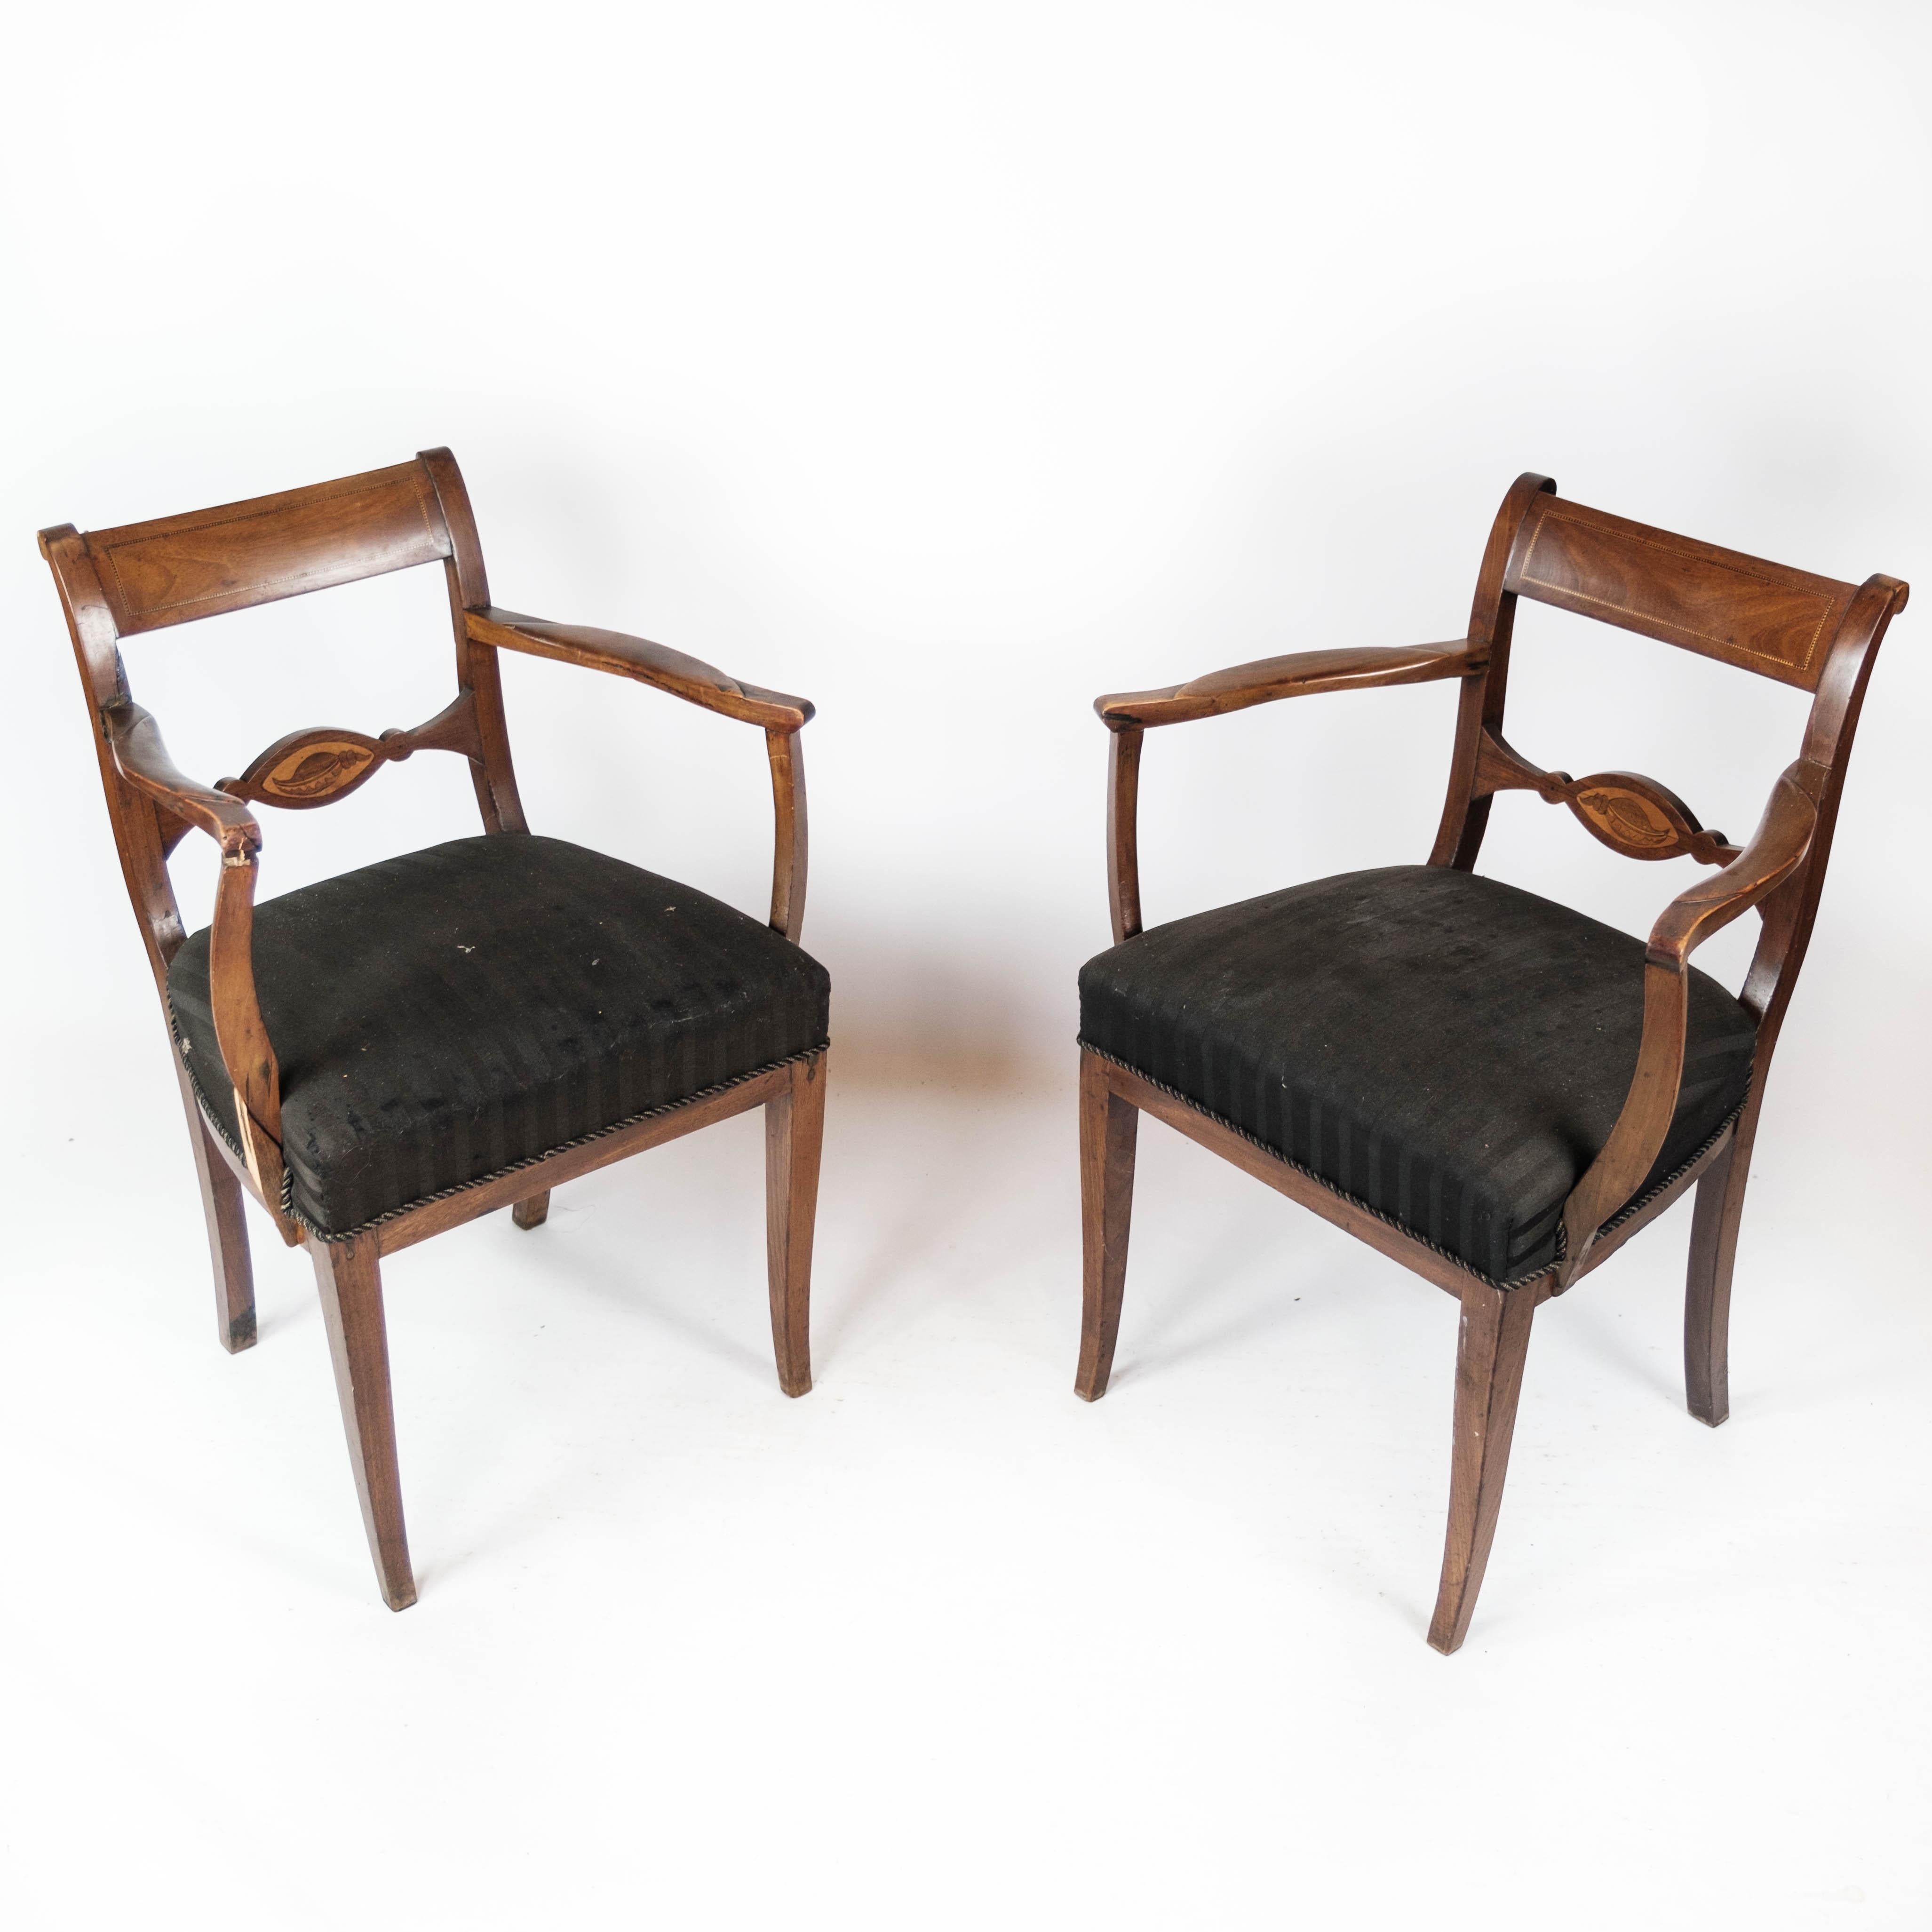 Diese beiden Mahagoni-Sessel, die mit elegantem schwarzem Stoff bezogen sind, stammen aus der eleganten Ära der 1860er Jahre. Ihr zeitloses Design und die klassische Polsterung machen sie zu einer raffinierten Ergänzung für jede Einrichtung.

Trotz